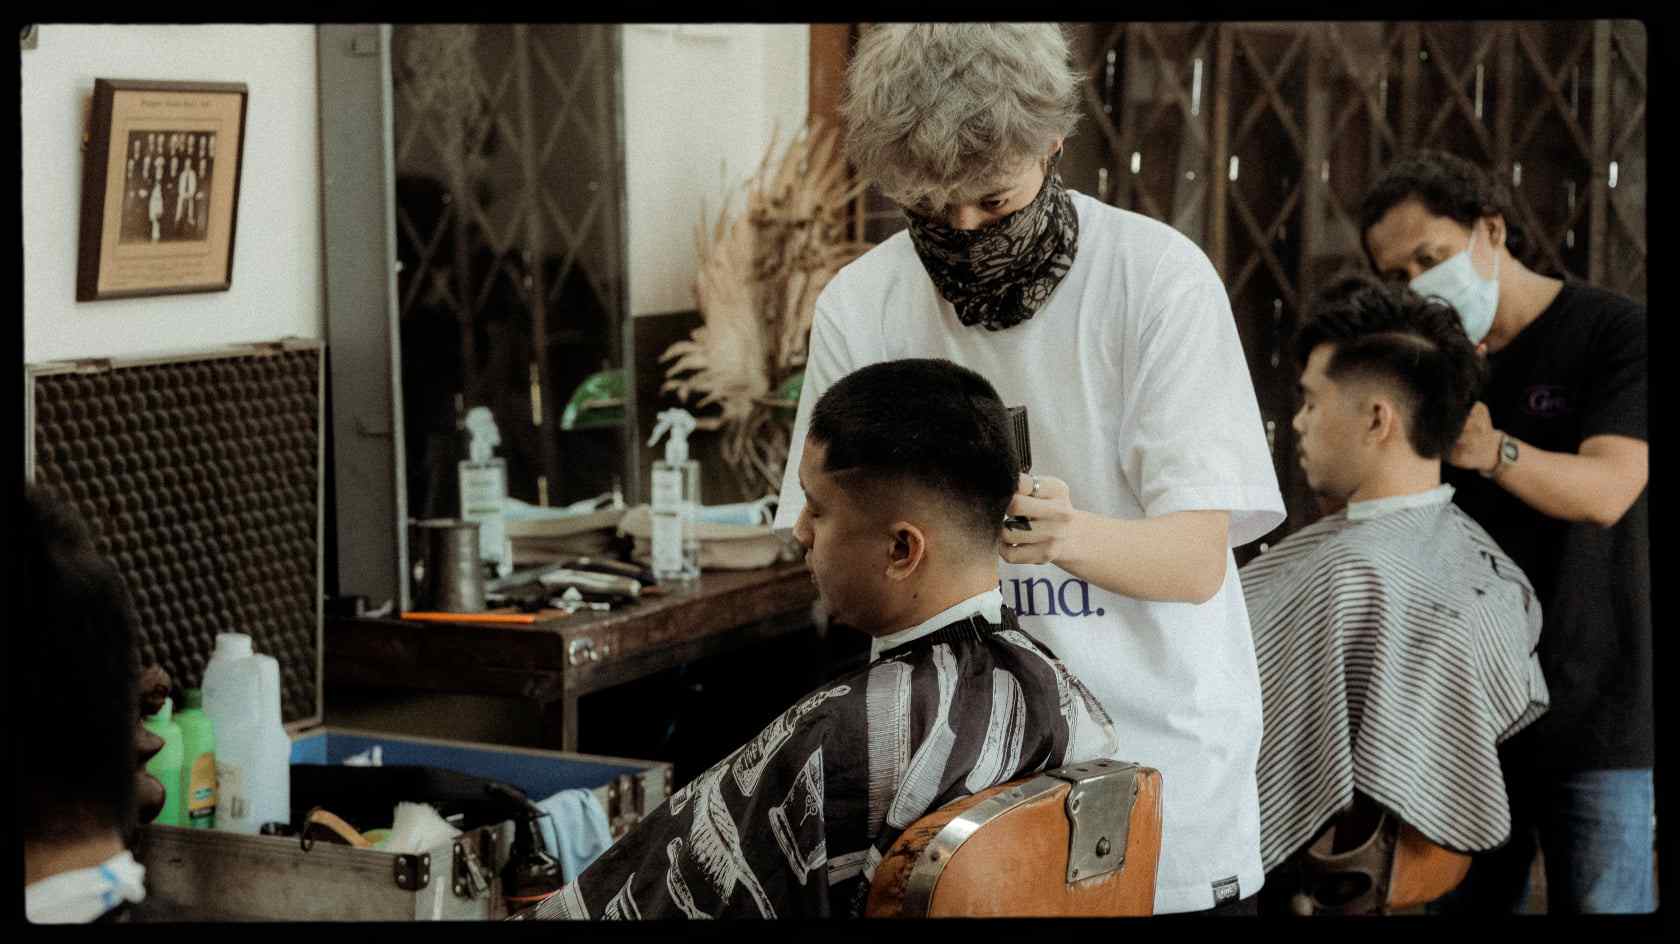 barbershop in pampanga